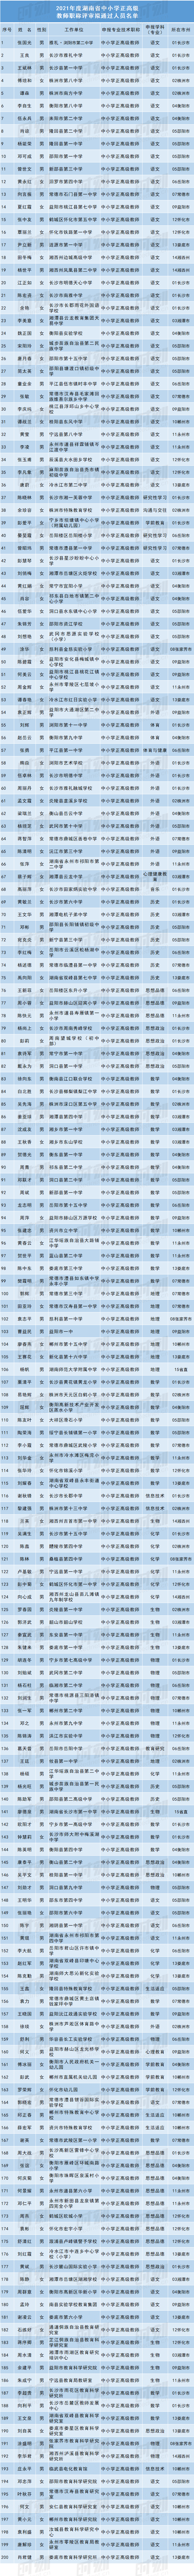 湖南200名中小学教师拟获评正高级职称，有你的老师吗？